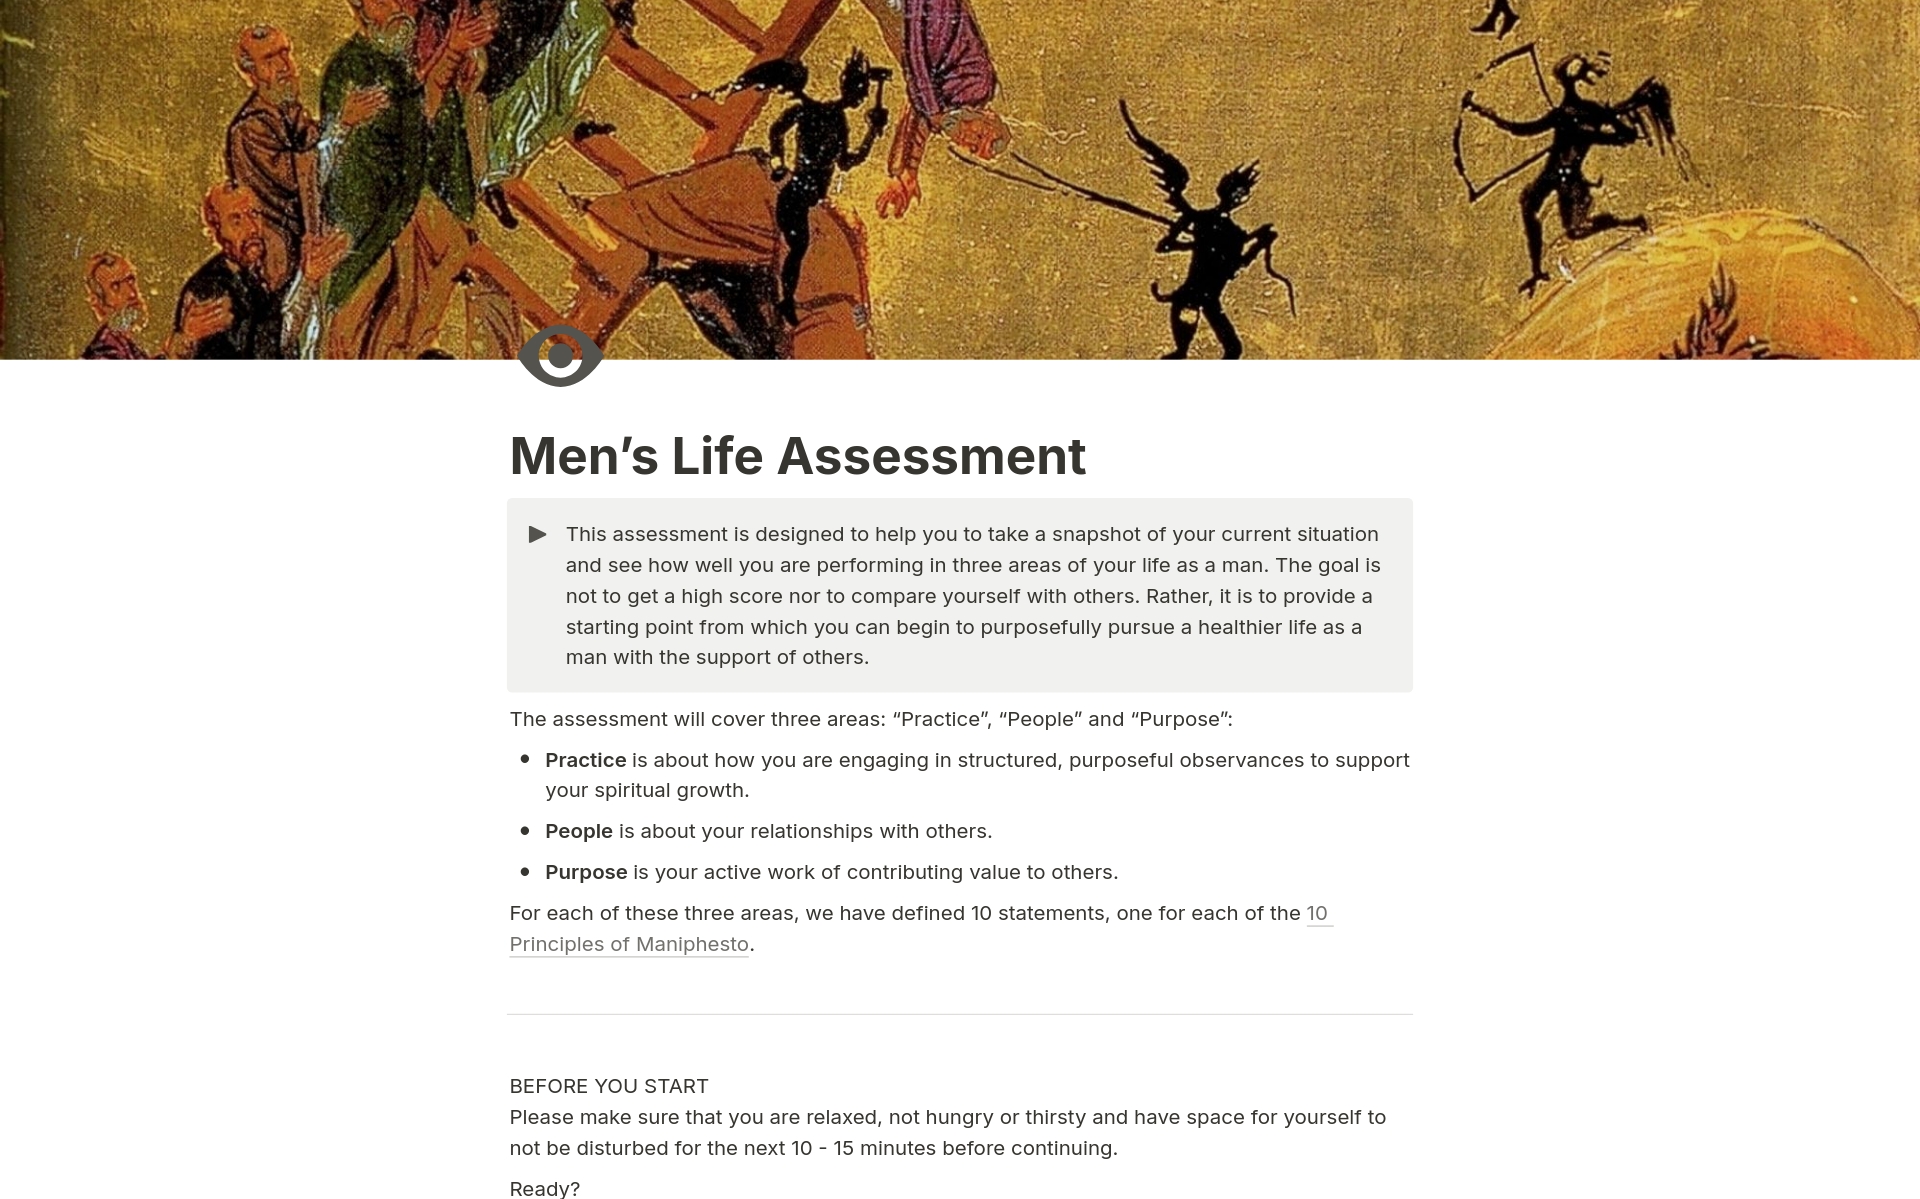 Vista previa de una plantilla para Men's Life Assessment